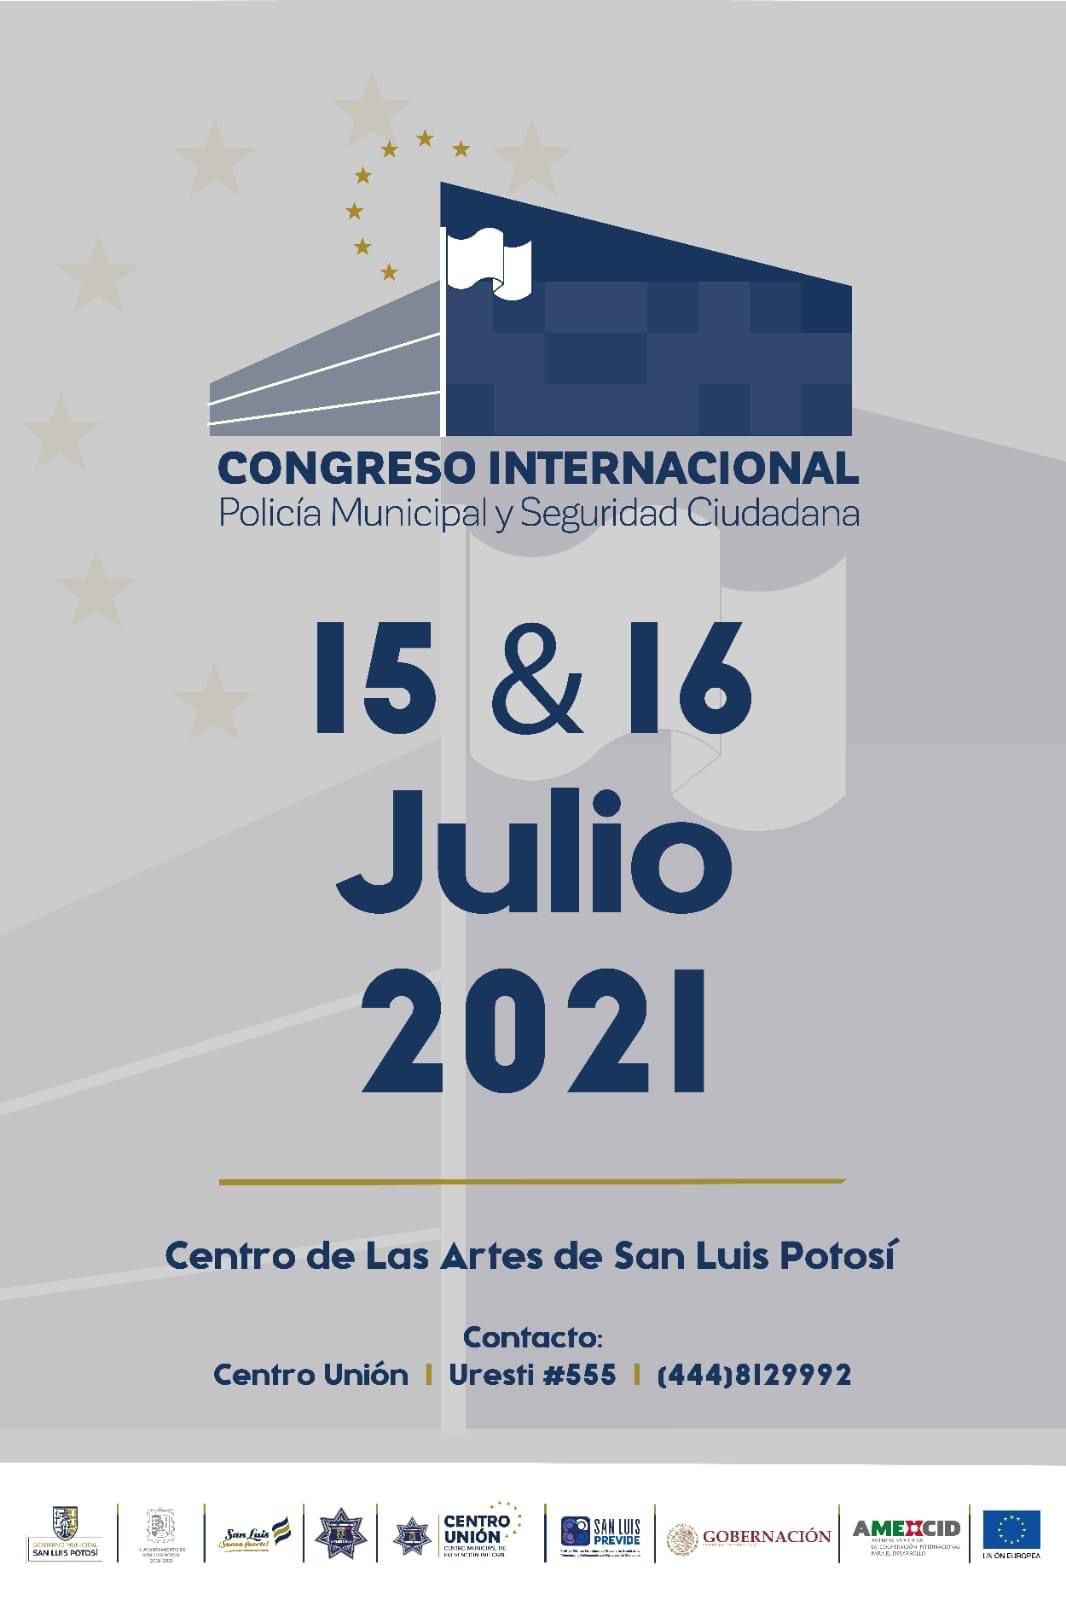 “Congreso Internacional de Policía Municipal y Seguridad Ciudadana”